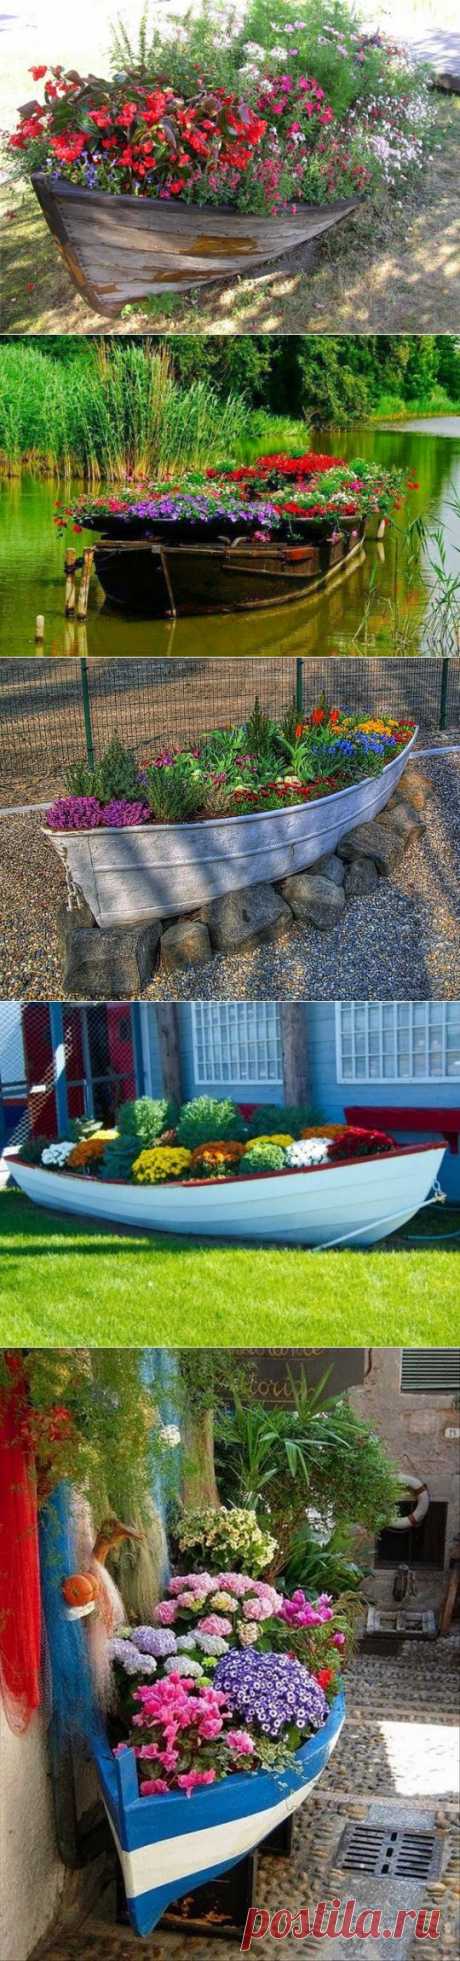 Клумба в лодке: потрясающая идея оригинального украшения сада | 6 соток